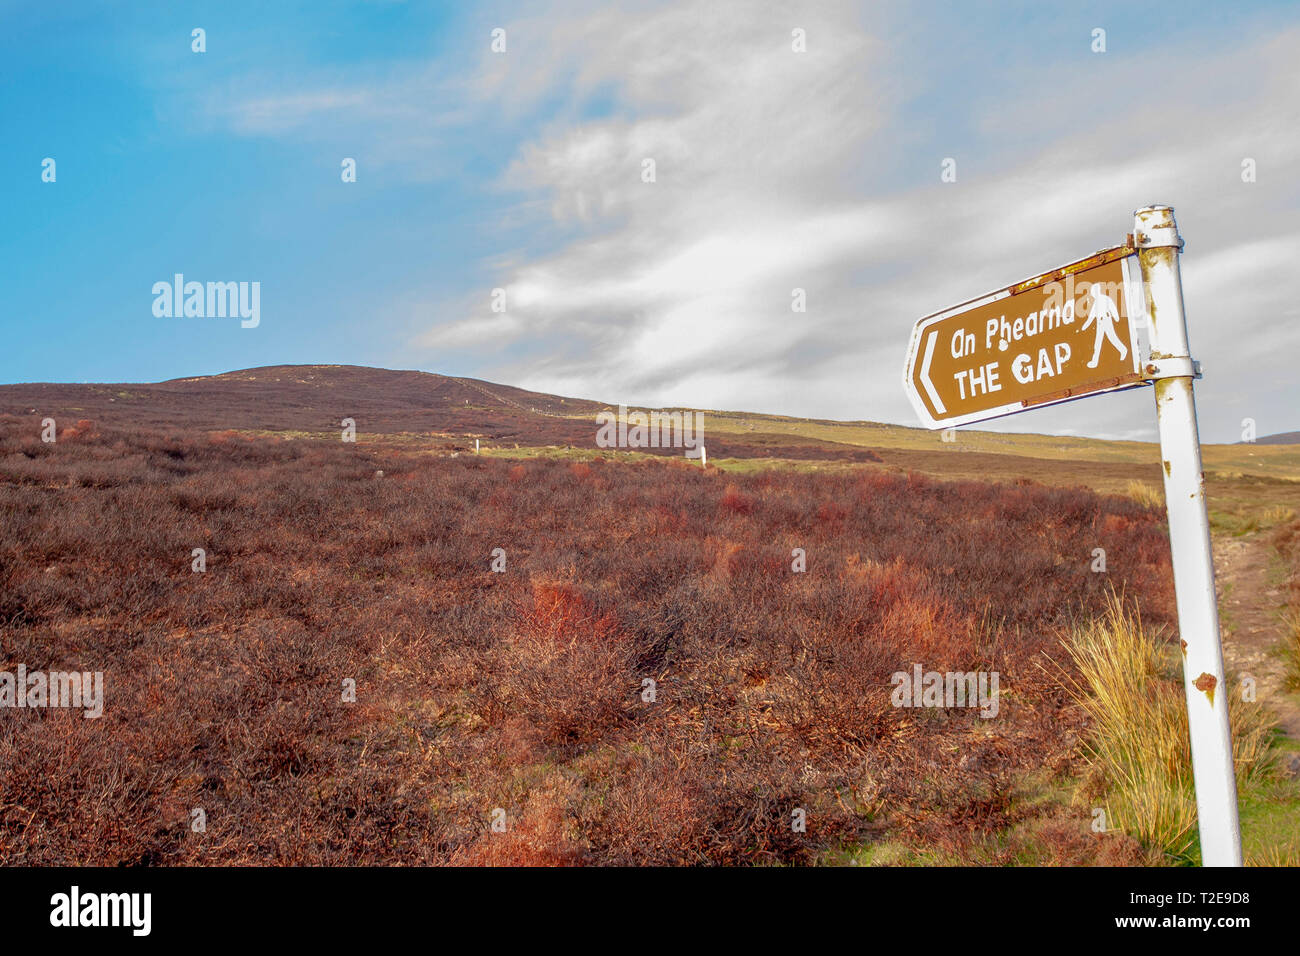 Verbrannter oder gezungter Gorse auf Bergmoorland neben einem Wanderwegschild für "The Gap" in den Comeragh Mountains, County Waterford, Munster, Irland. Stockfoto